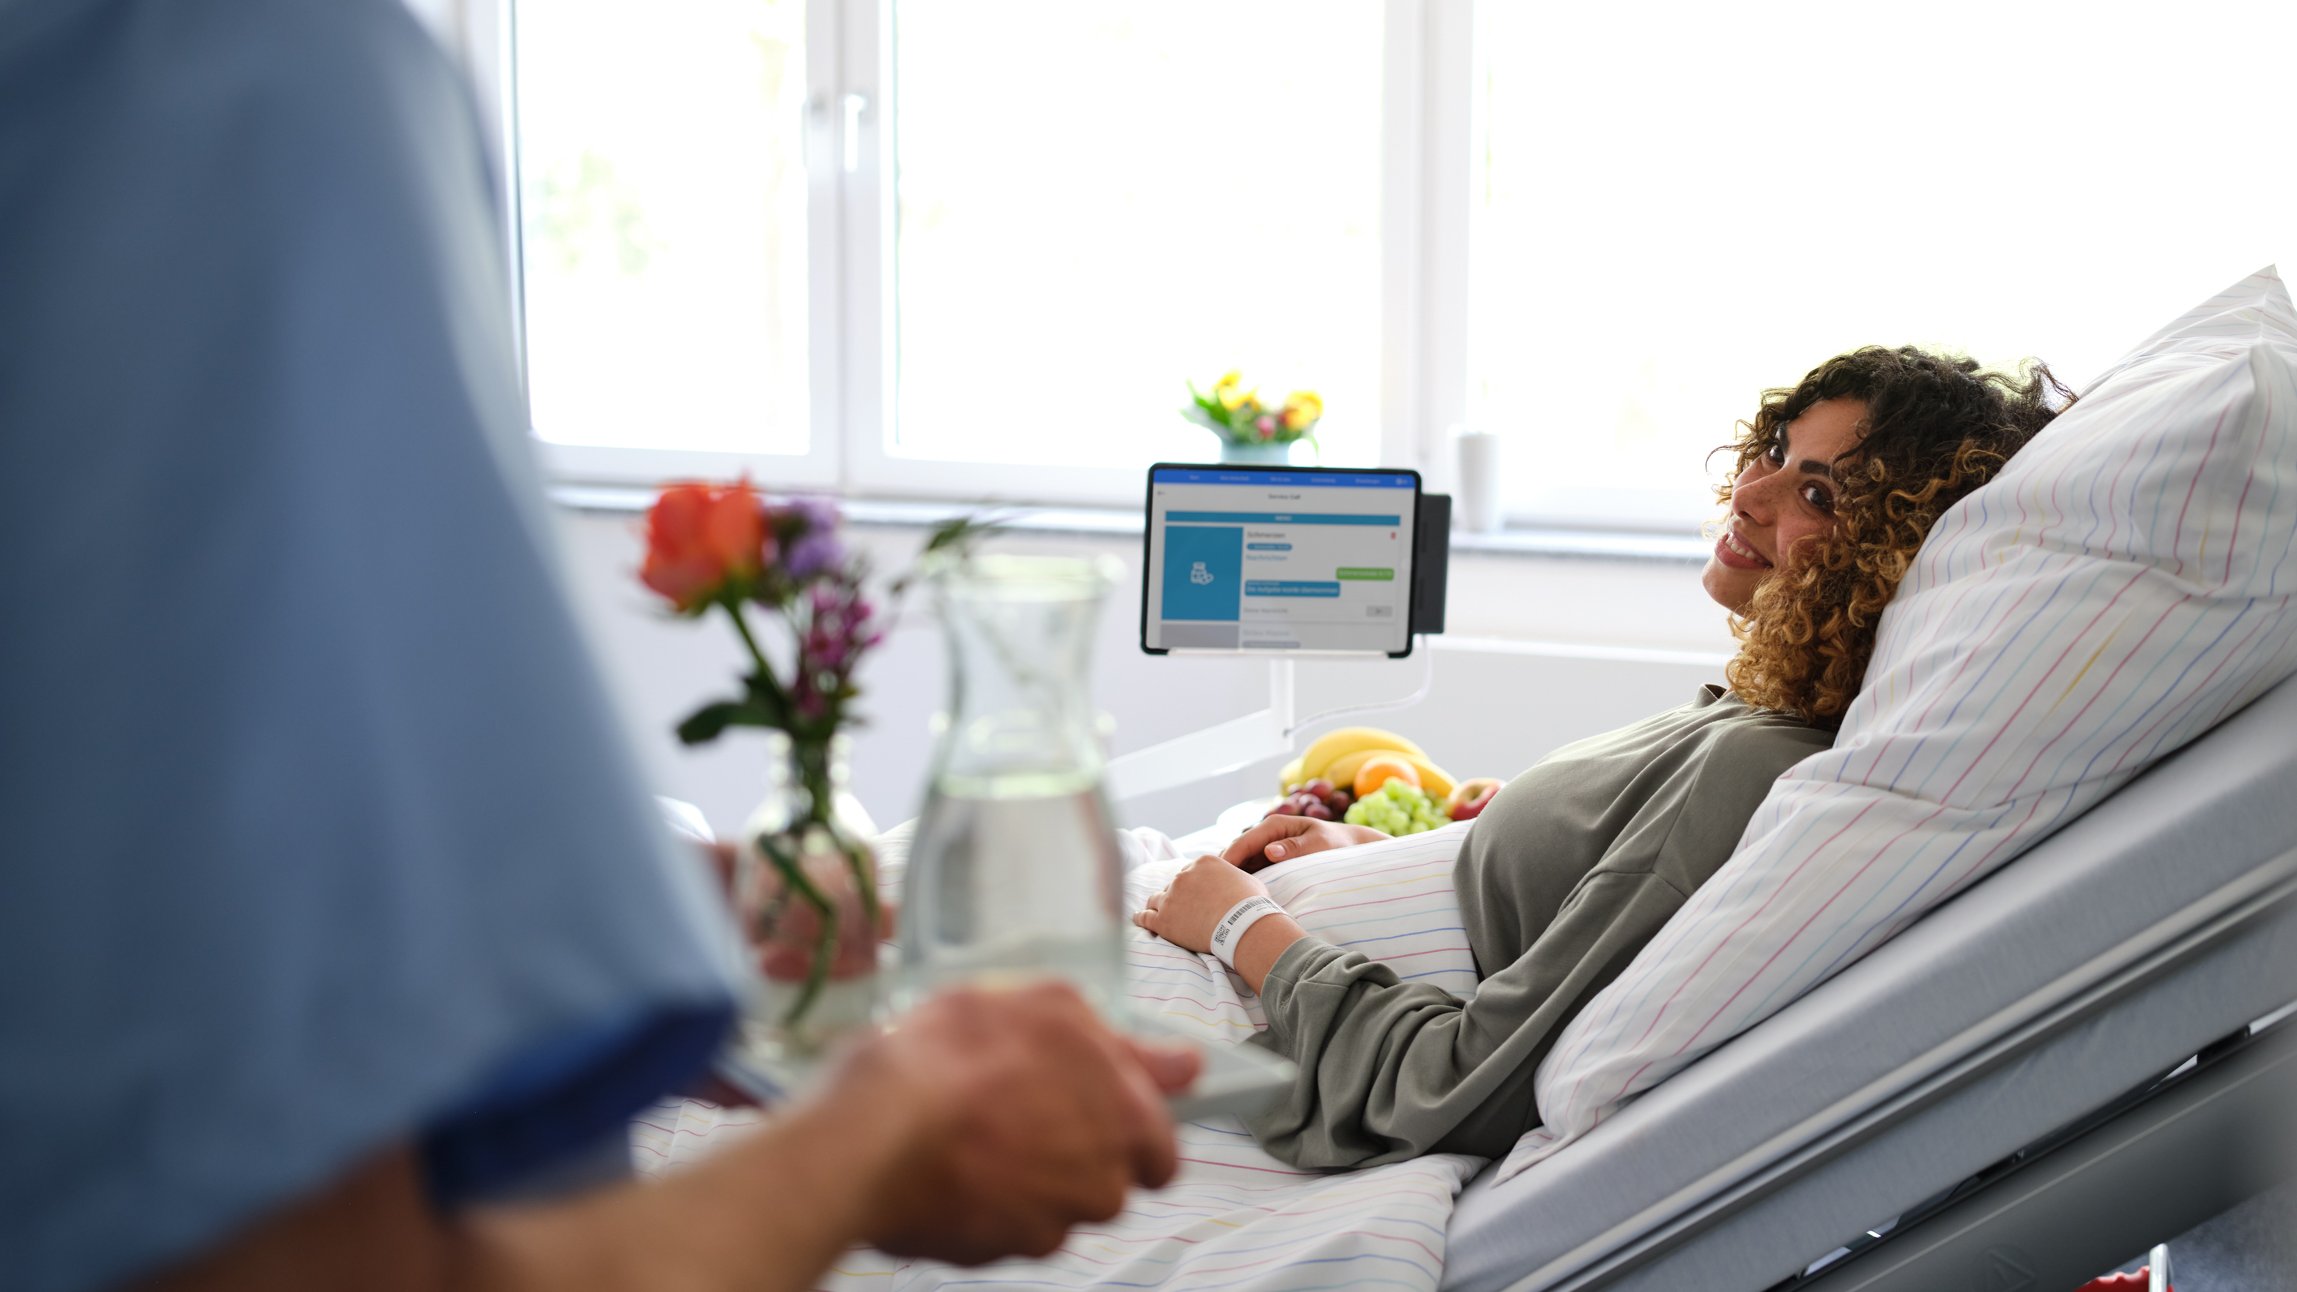 Patientenkommunikation: Pfleger bringt junger Patientin Wasser ans Bett, das sie über den digitalen Service Call bestellt hat.